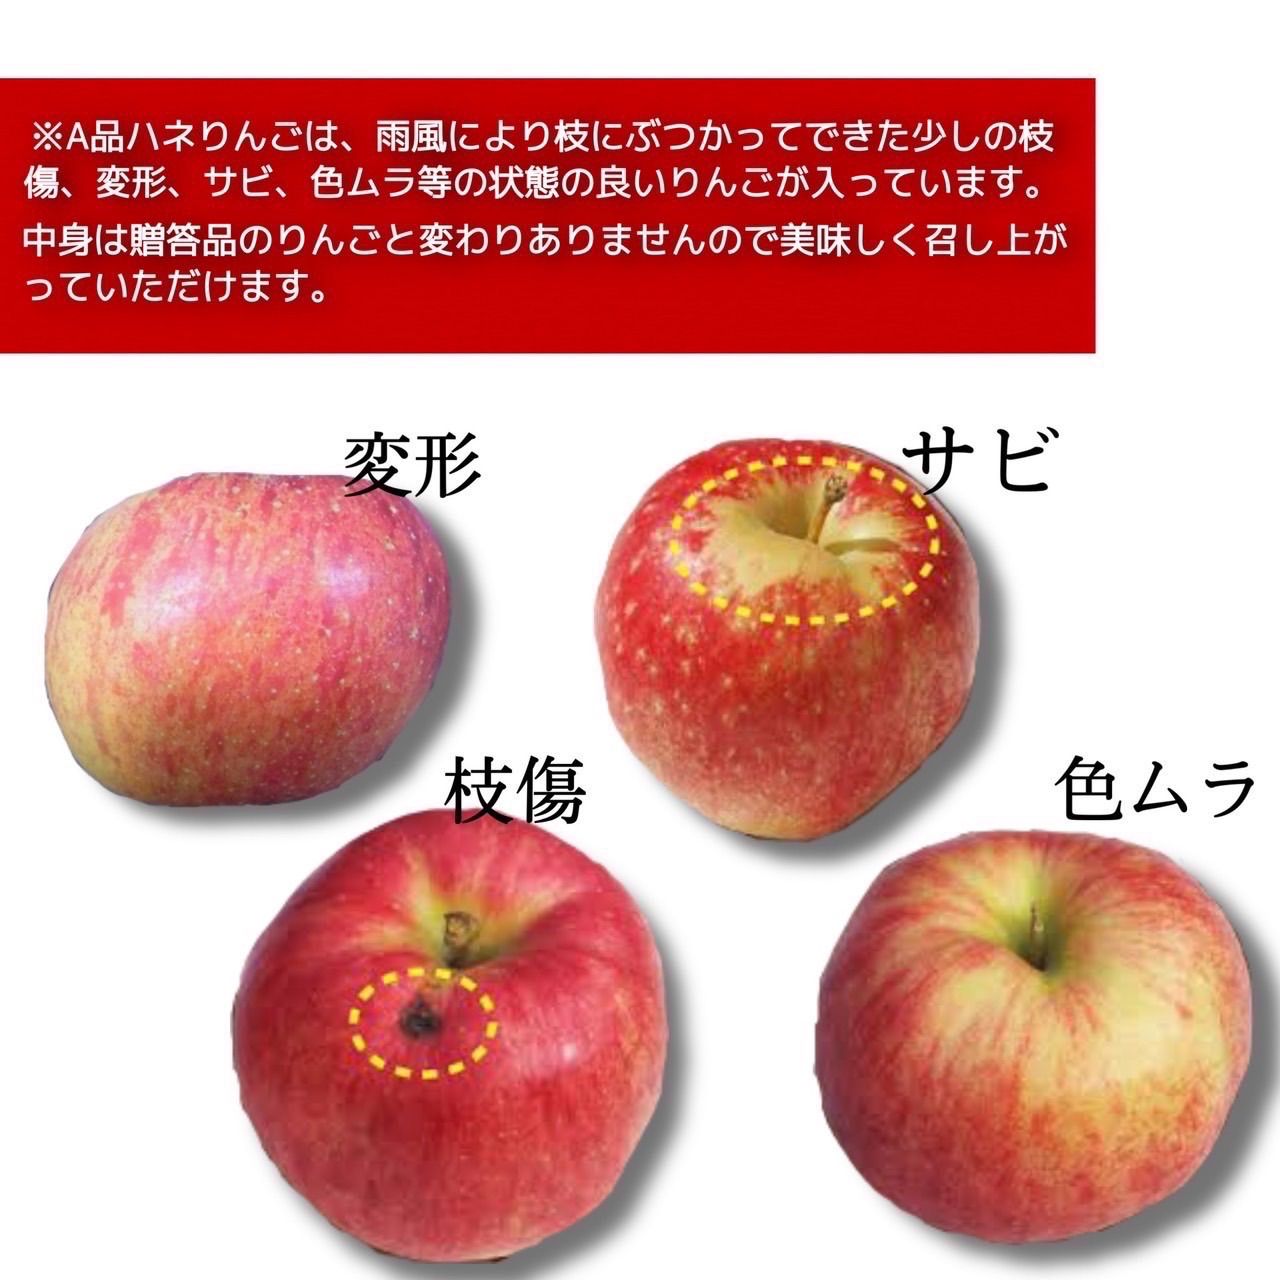 青森県産 もりのかがやき りんご【A品3kg】【送料無料】【農家直送】リンゴ-3